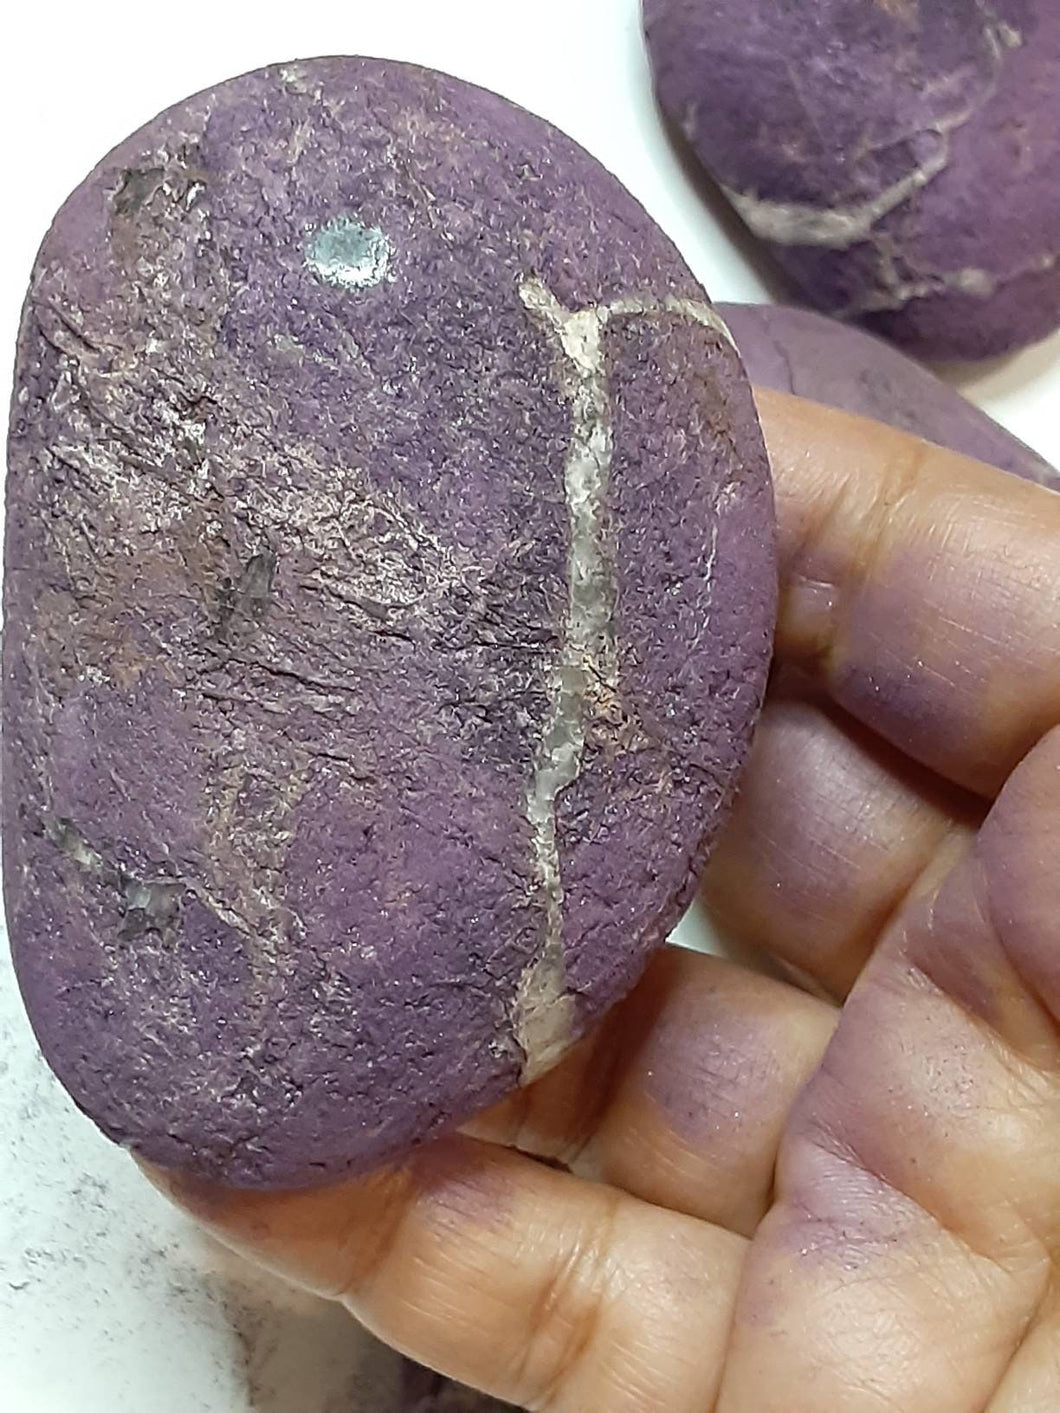 Purpurite Palmstone From Brazil 4